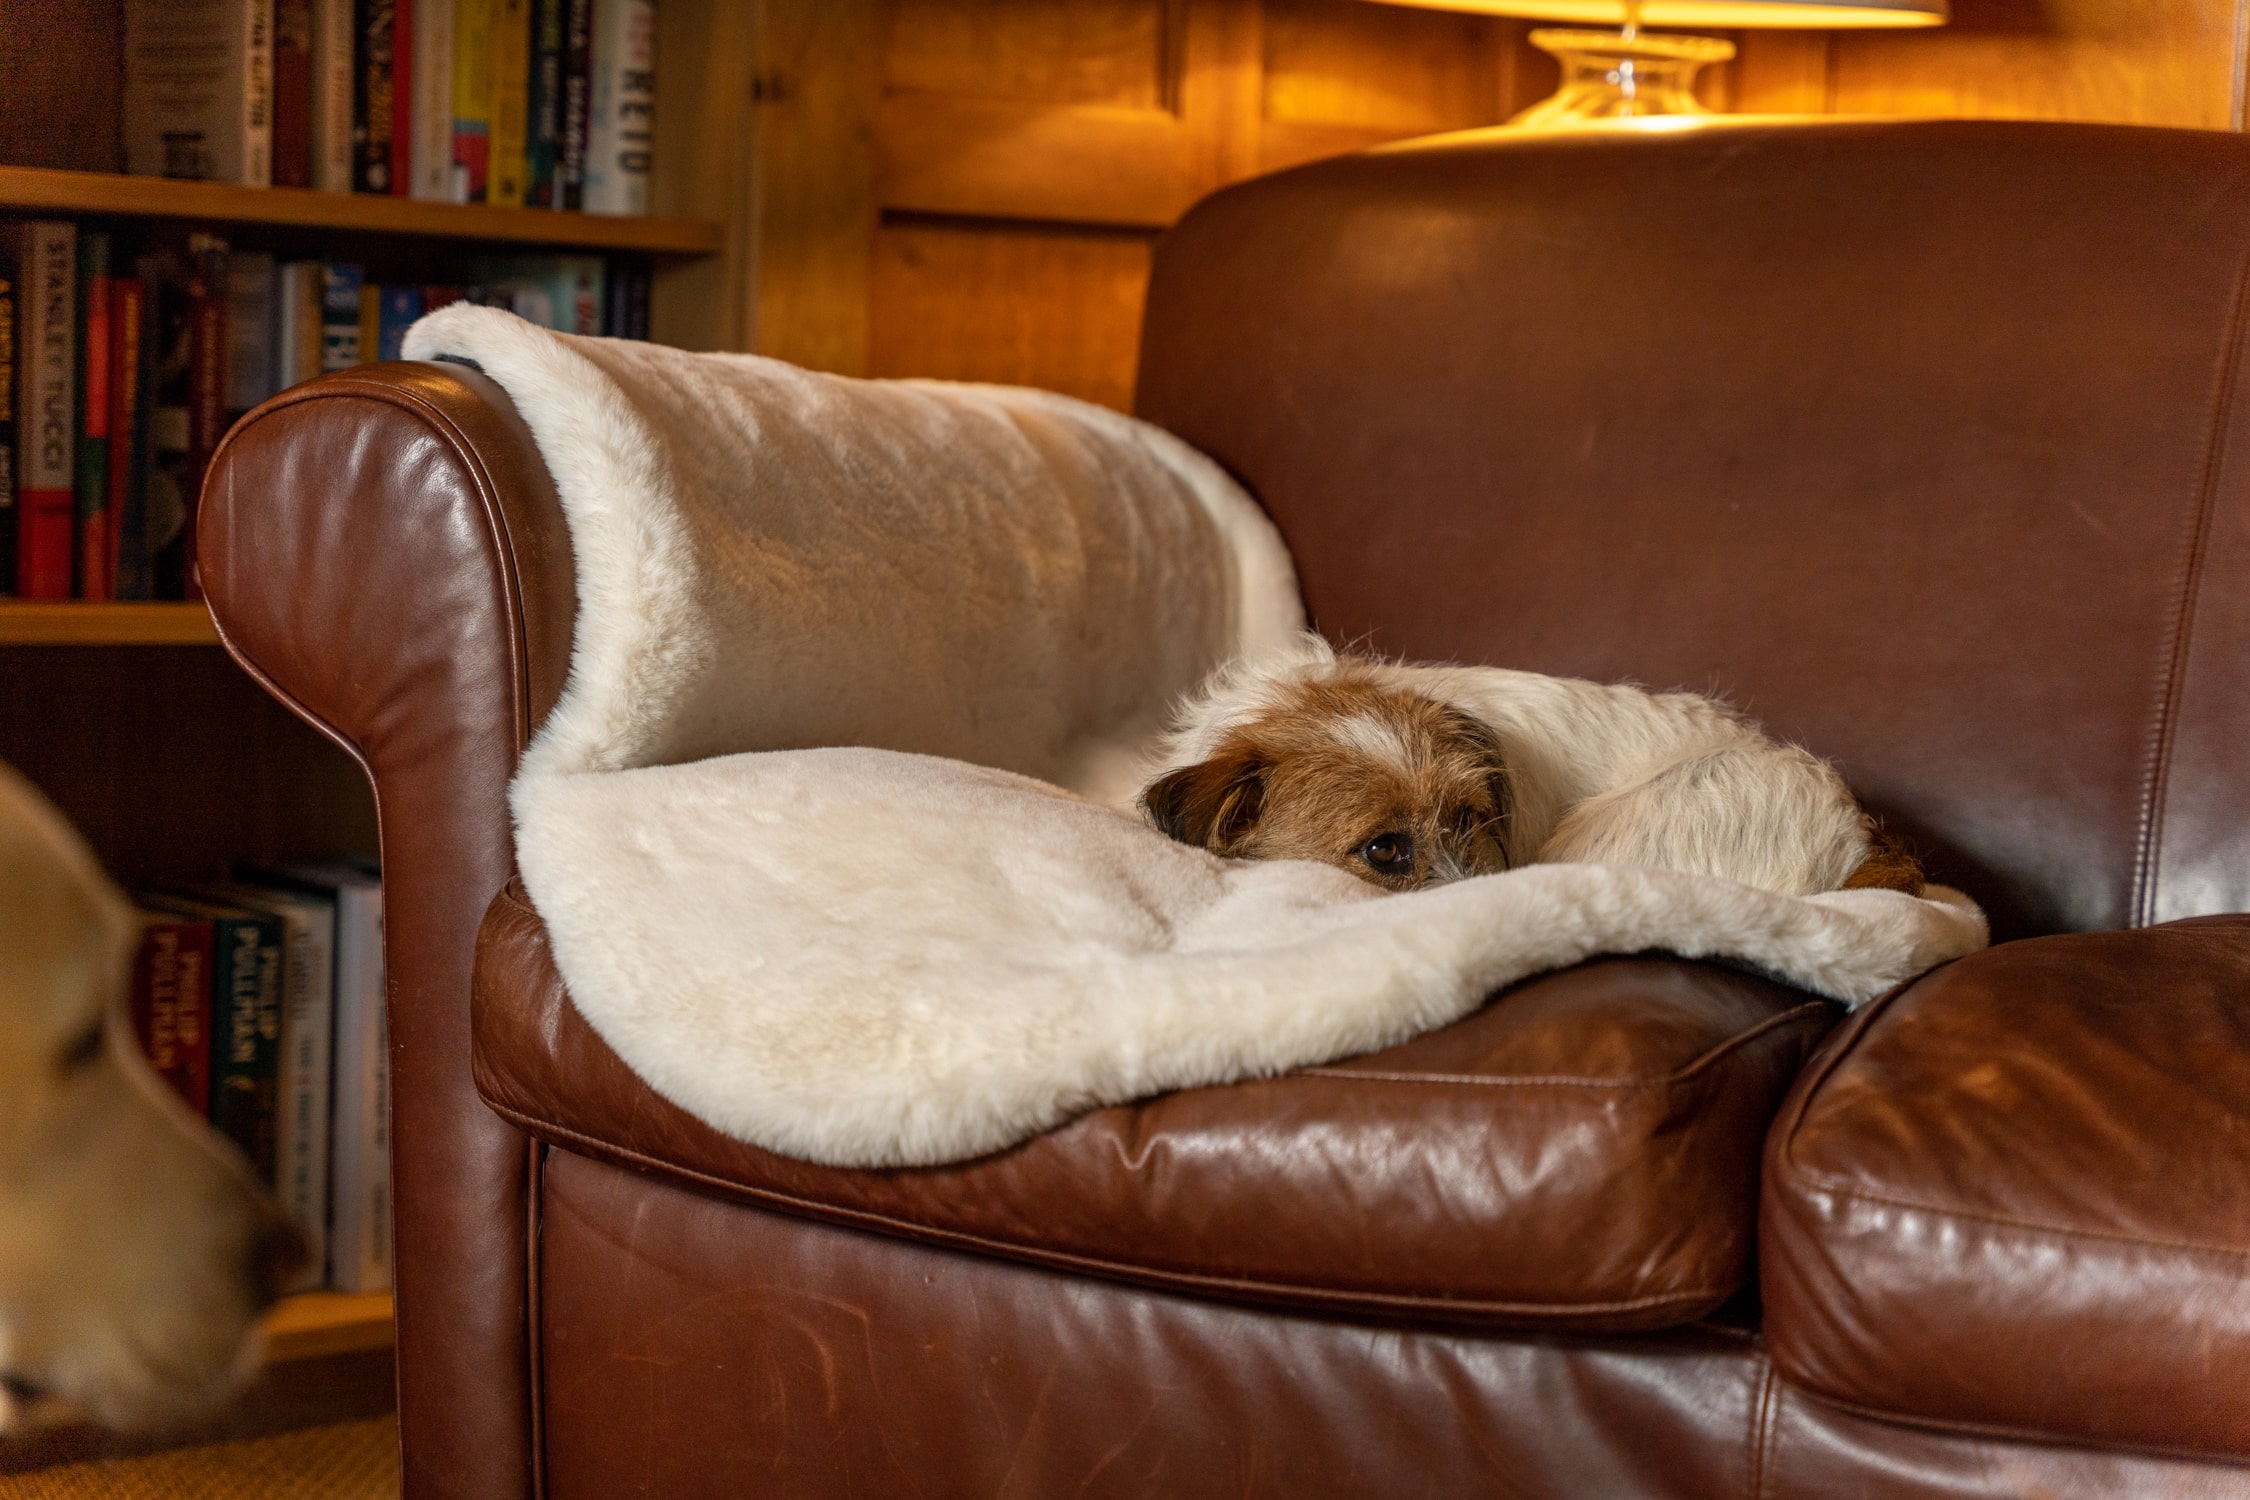 https://blog.omlet.us/wp-content/uploads/sites/6/2022/12/Terrier-asleep-on-Omlet-Luxury-Faux-Sheepskin-Dog-Blanket-on-sofa.jpg